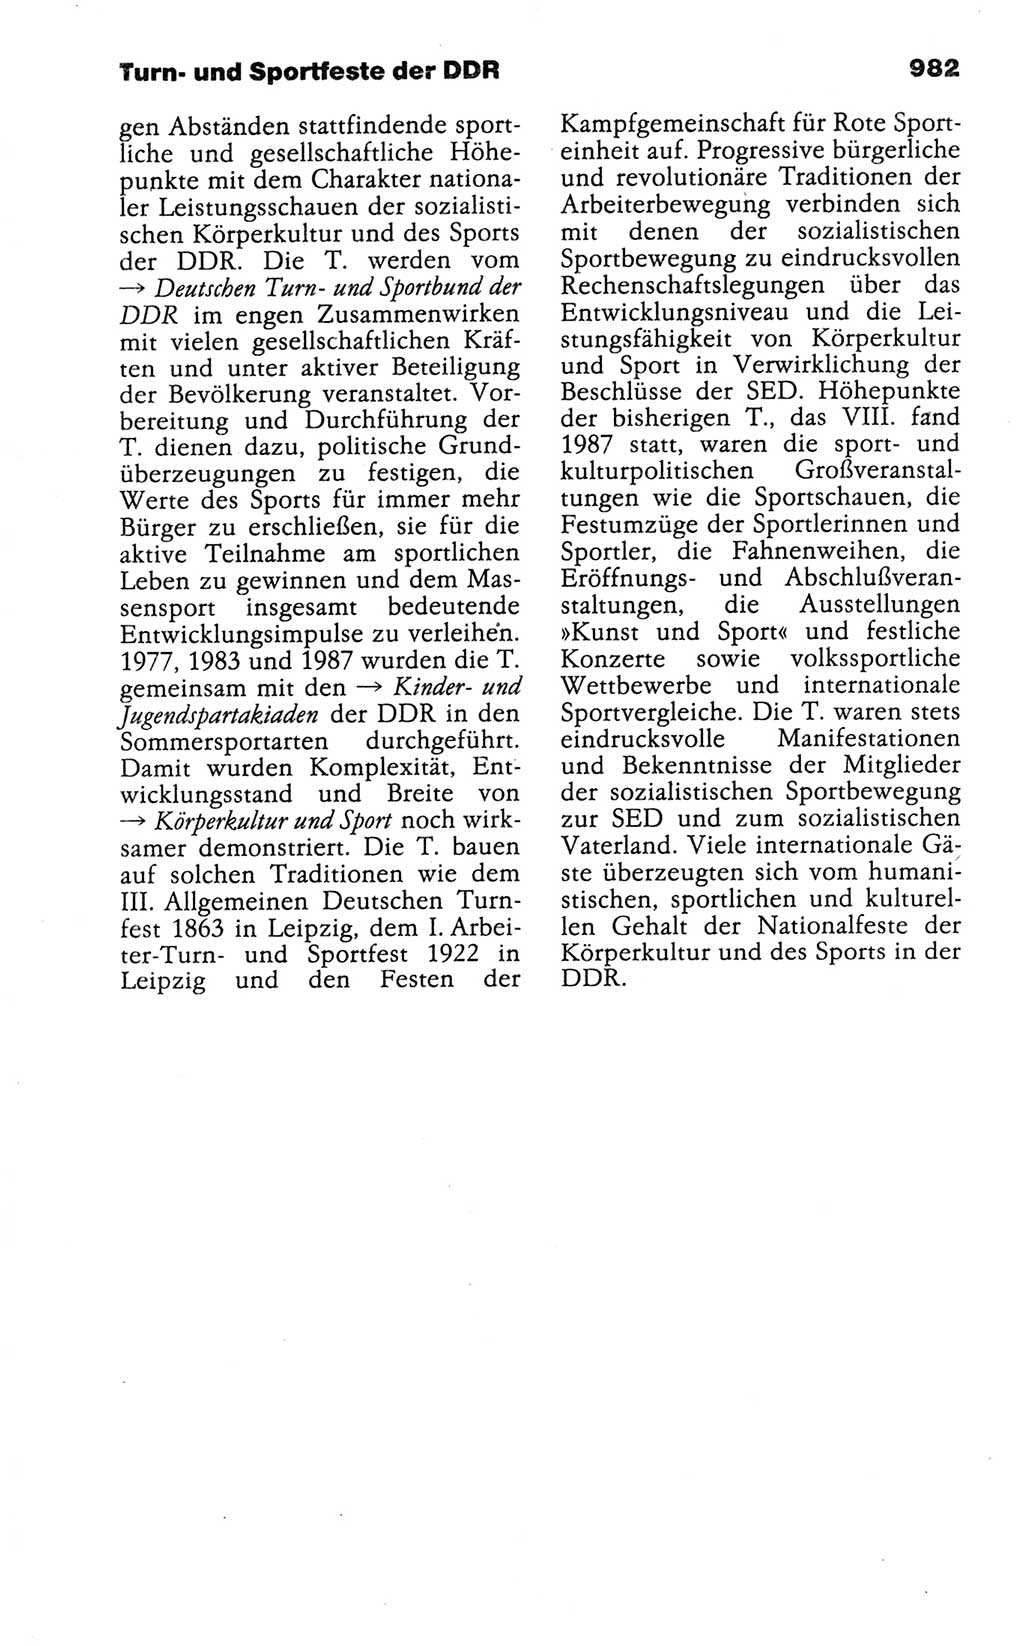 Kleines politisches Wörterbuch [Deutsche Demokratische Republik (DDR)] 1988, Seite 982 (Kl. pol. Wb. DDR 1988, S. 982)